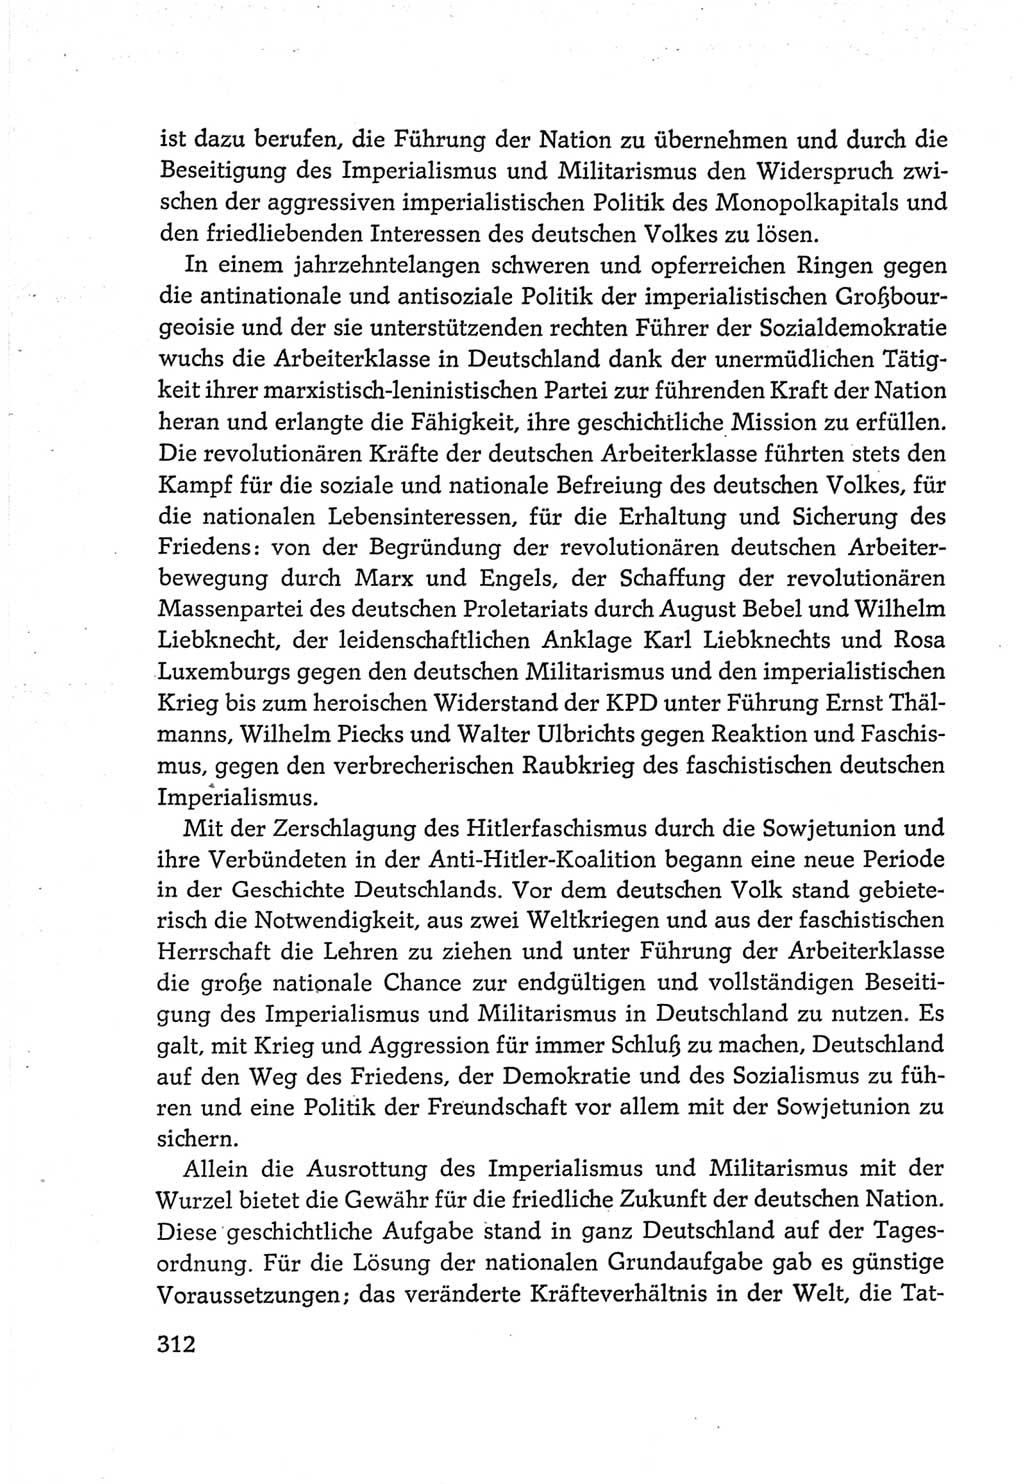 Protokoll der Verhandlungen des Ⅵ. Parteitages der Sozialistischen Einheitspartei Deutschlands (SED) [Deutsche Demokratische Republik (DDR)] 1963, Band Ⅳ, Seite 312 (Prot. Verh. Ⅵ. PT SED DDR 1963, Bd. Ⅳ, S. 312)